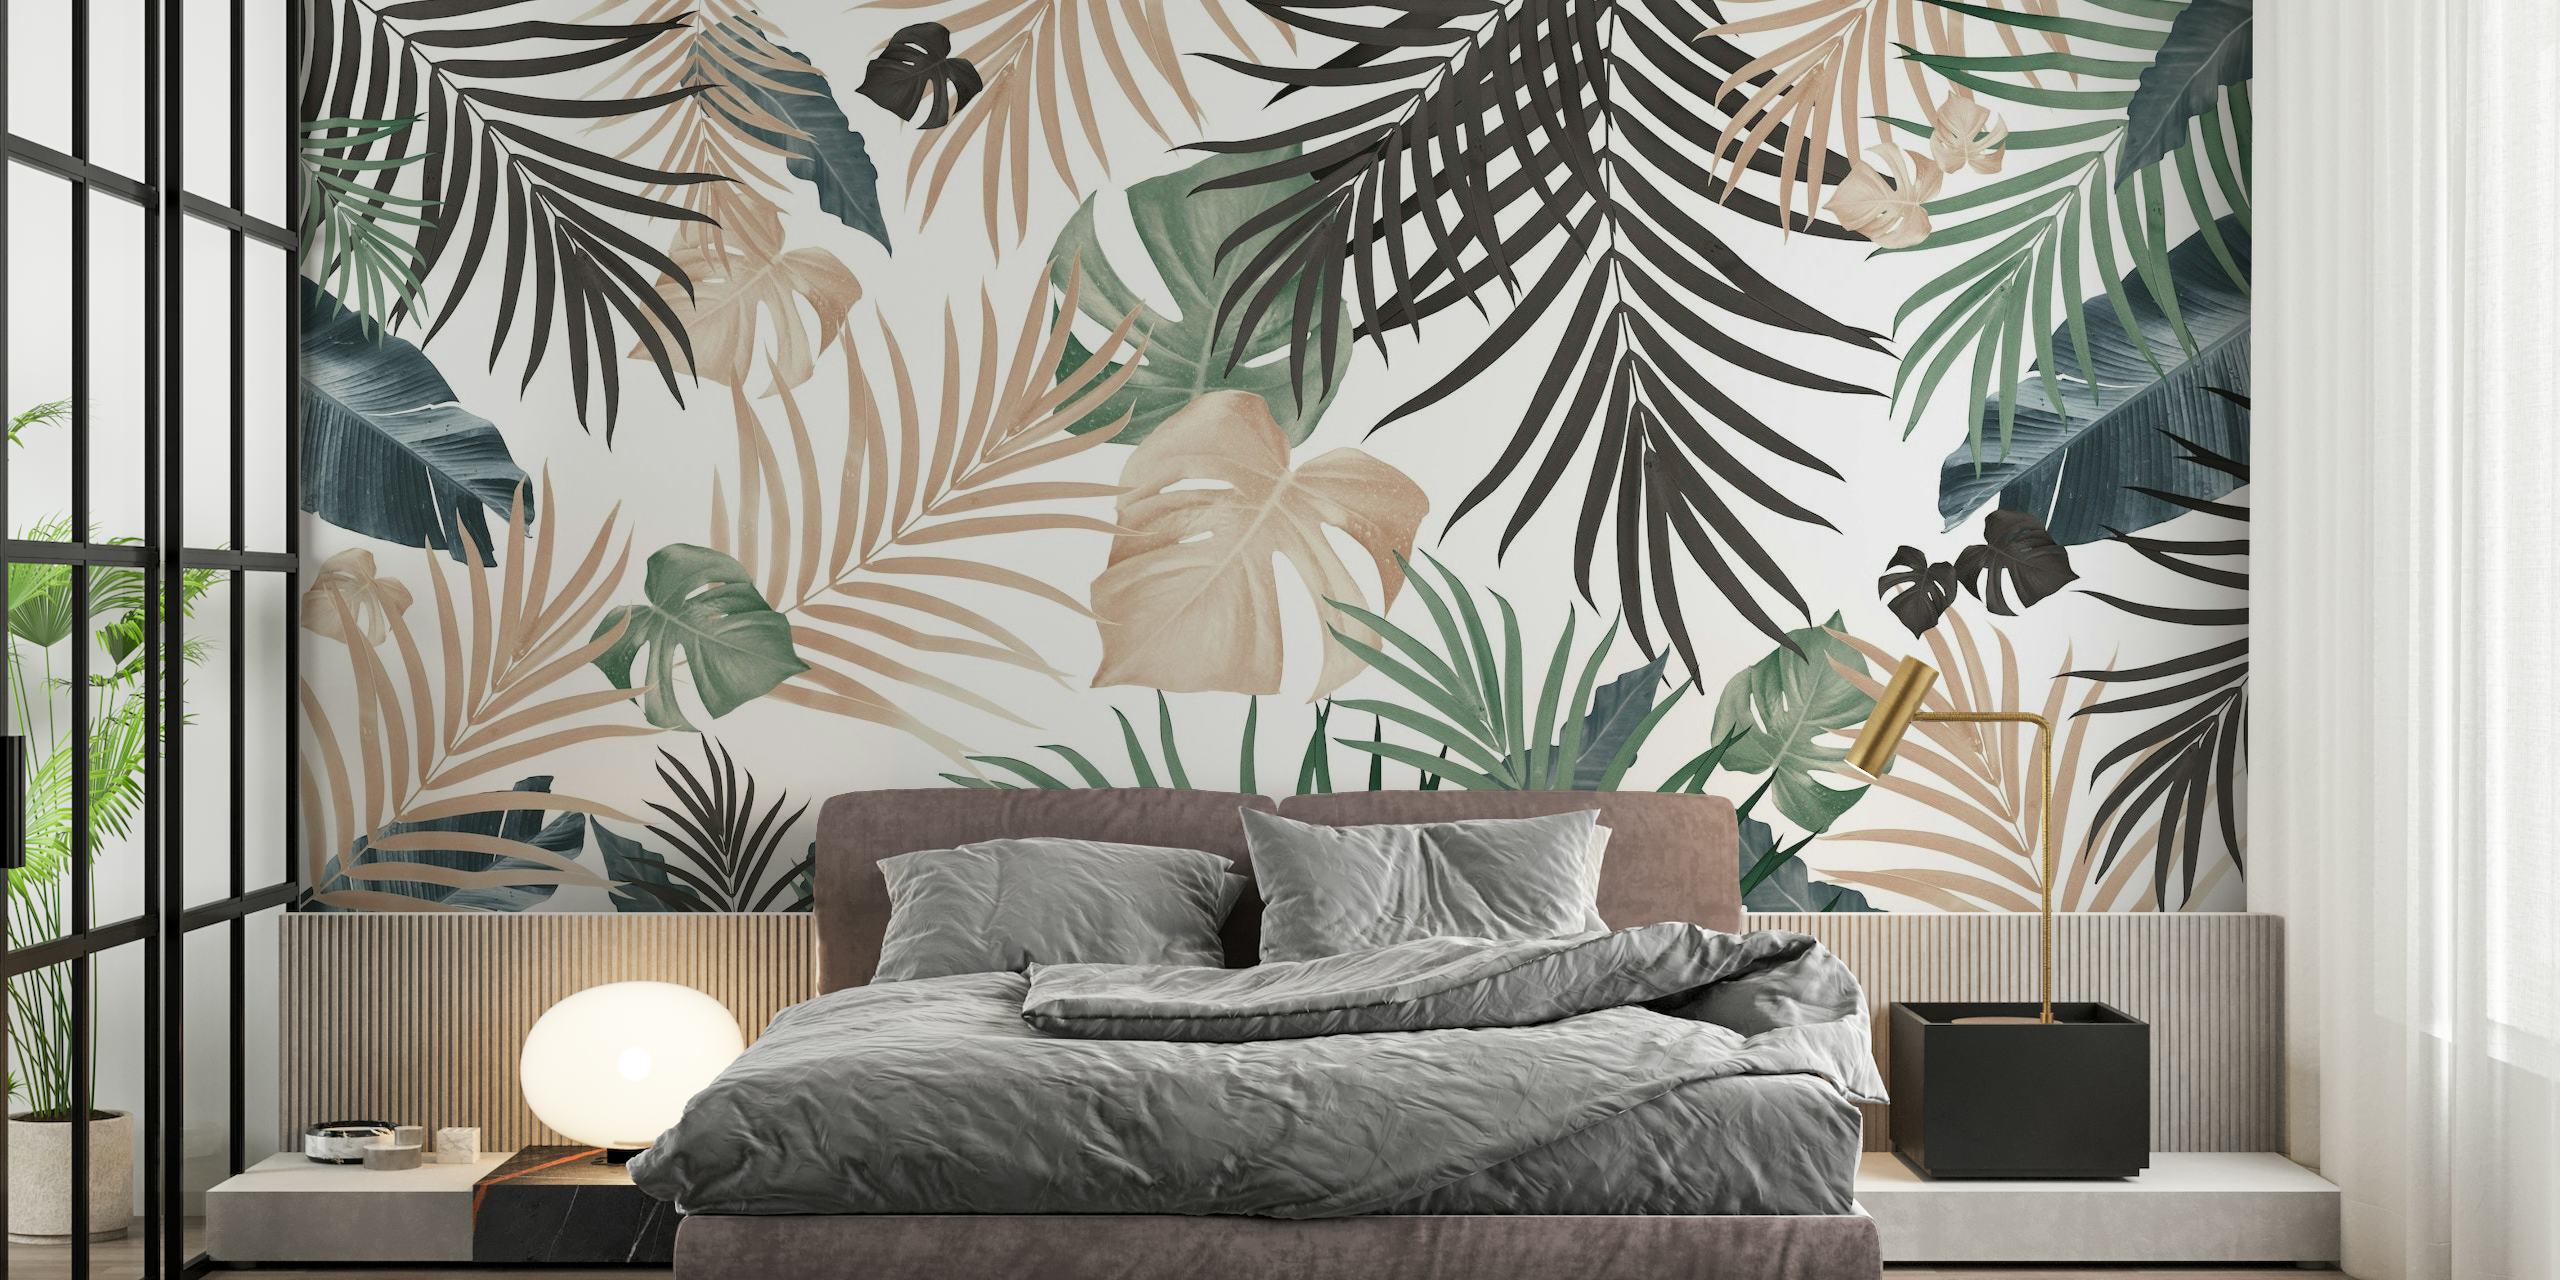 Umjetnički zidni mural s tropskim lišćem s nježnom paletom boja